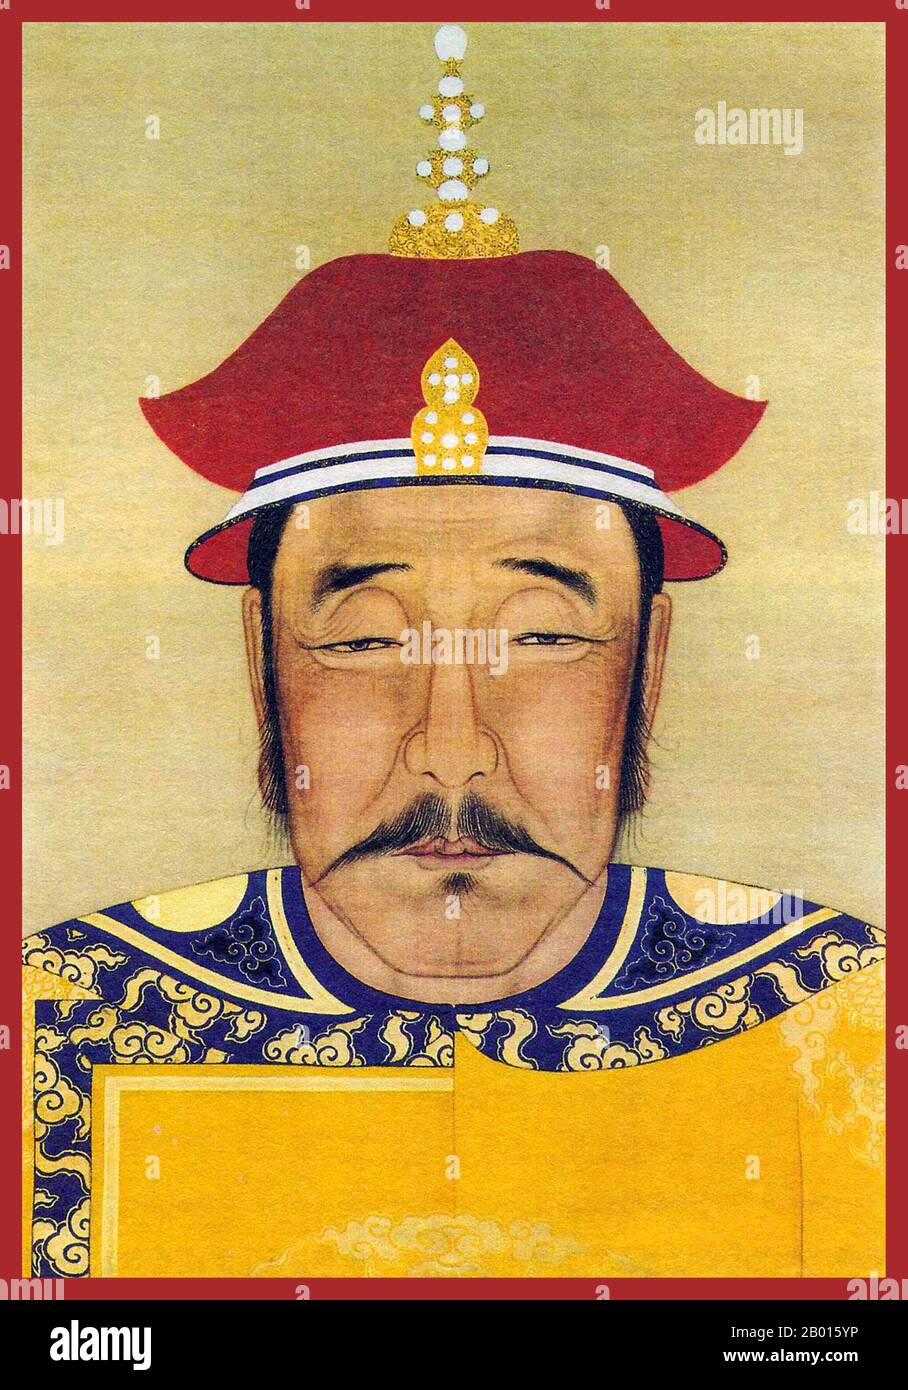 China: Nurhaci (21. Februar 1559 – 30. September 1626), 1. Khan der späteren Jin-Dynastie. Hängende Schriftrolle Malerei, 17. Jahrhundert. Nurhaci/Nurhachi, Tempelname Taizu, war ein wichtiger Jurchen-Häuptling, der im späten 16. Jahrhundert im heutigen Nordostchina zu Ansehen kam. Nurhaci gehörte zum Aisin Gioro Clan und war der gründungskhan der späteren Jin Dynastie, die von 1616 bis 1626 regierte. Nurhaci organisierte und vereinigte verschiedene Jurchen-Stämme, konsolidierte das Achtbanner-Militärsystem und startete schließlich einen Angriff auf die chinesische Ming-Dynastie und die koreanische Joseon-Dynastie. Stockfoto